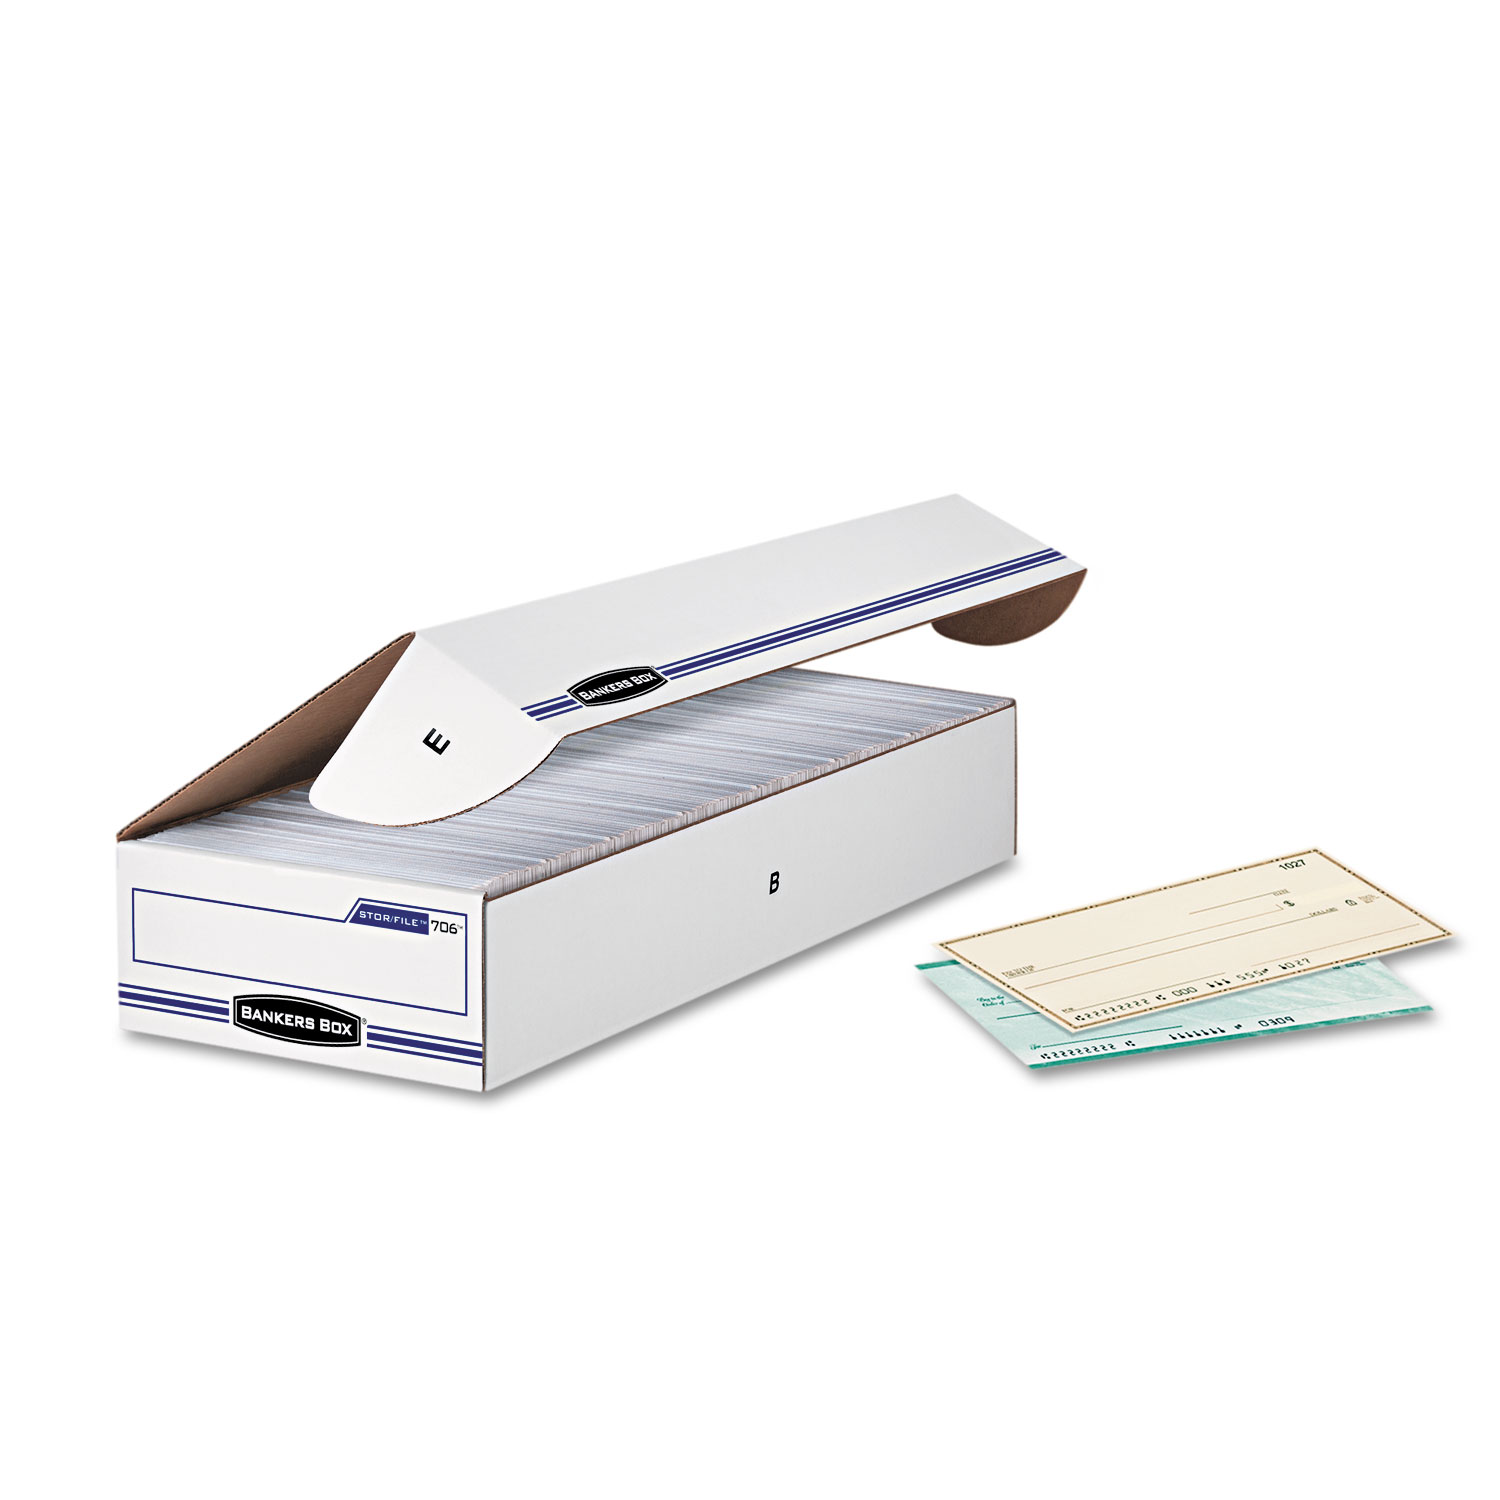  Bankers Box 00706 STOR/FILE Check Boxes, 9.25 x 25 x 4.13, White/Blue, 12/Carton (FEL00706) 